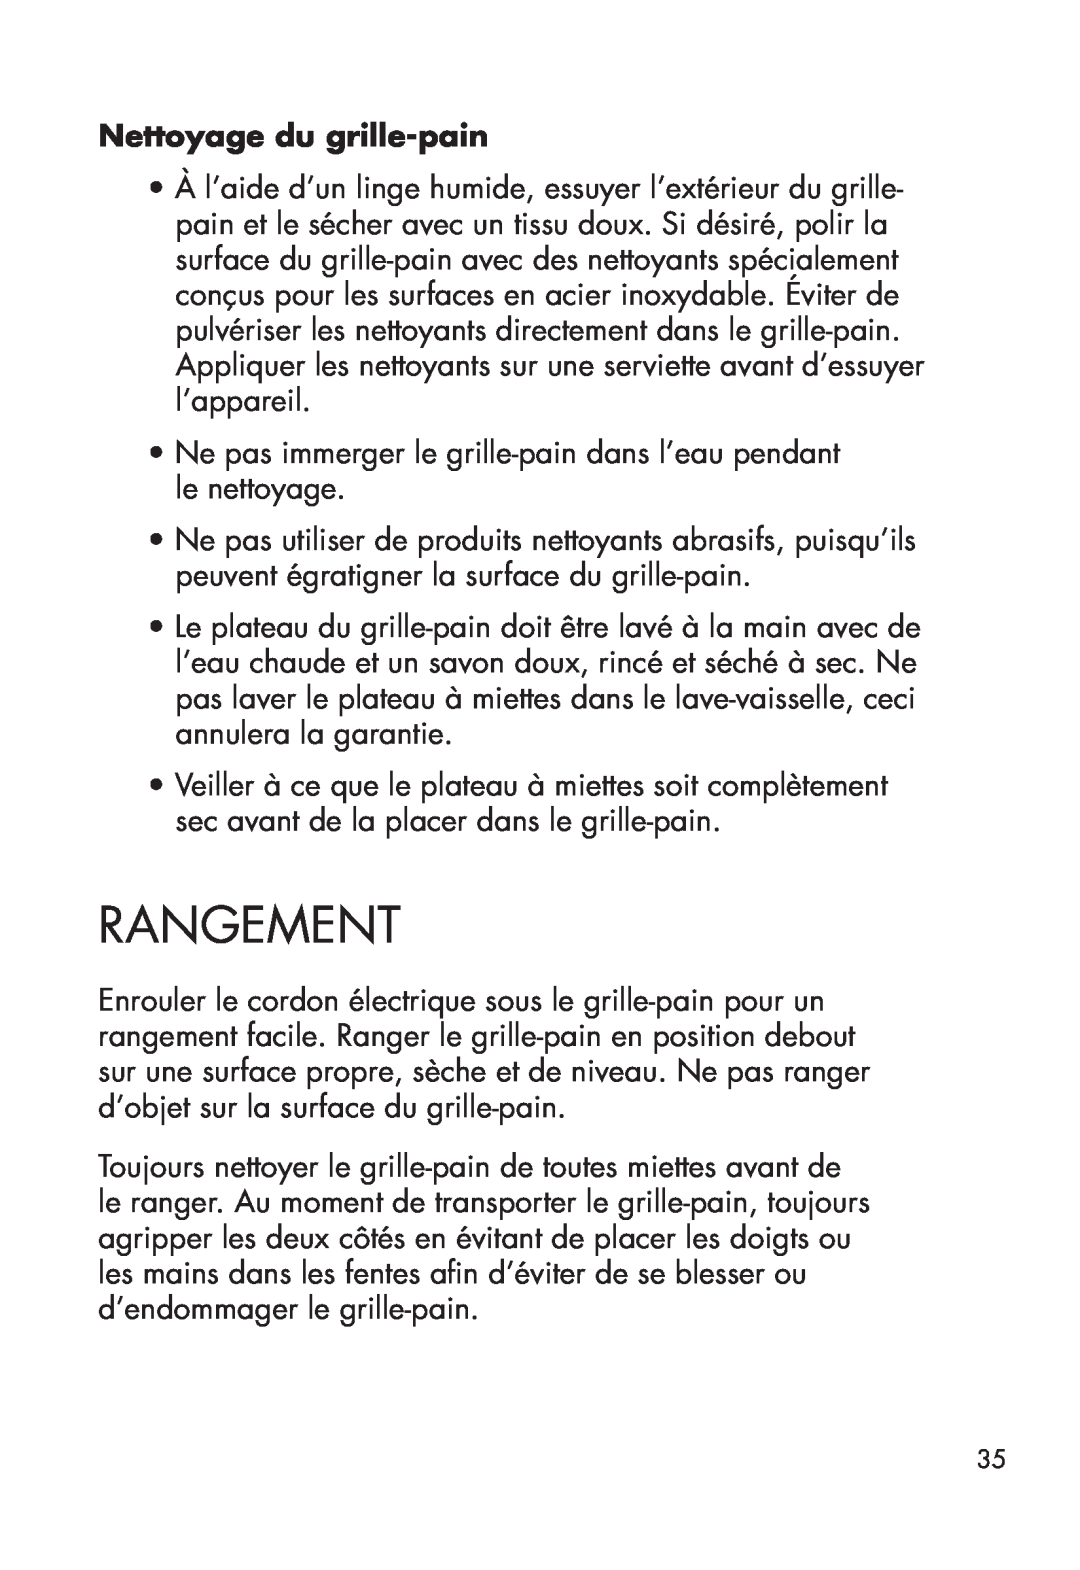 Calphalon 1779206, 1779207 manual Rangement, Nettoyage du grille-pain 